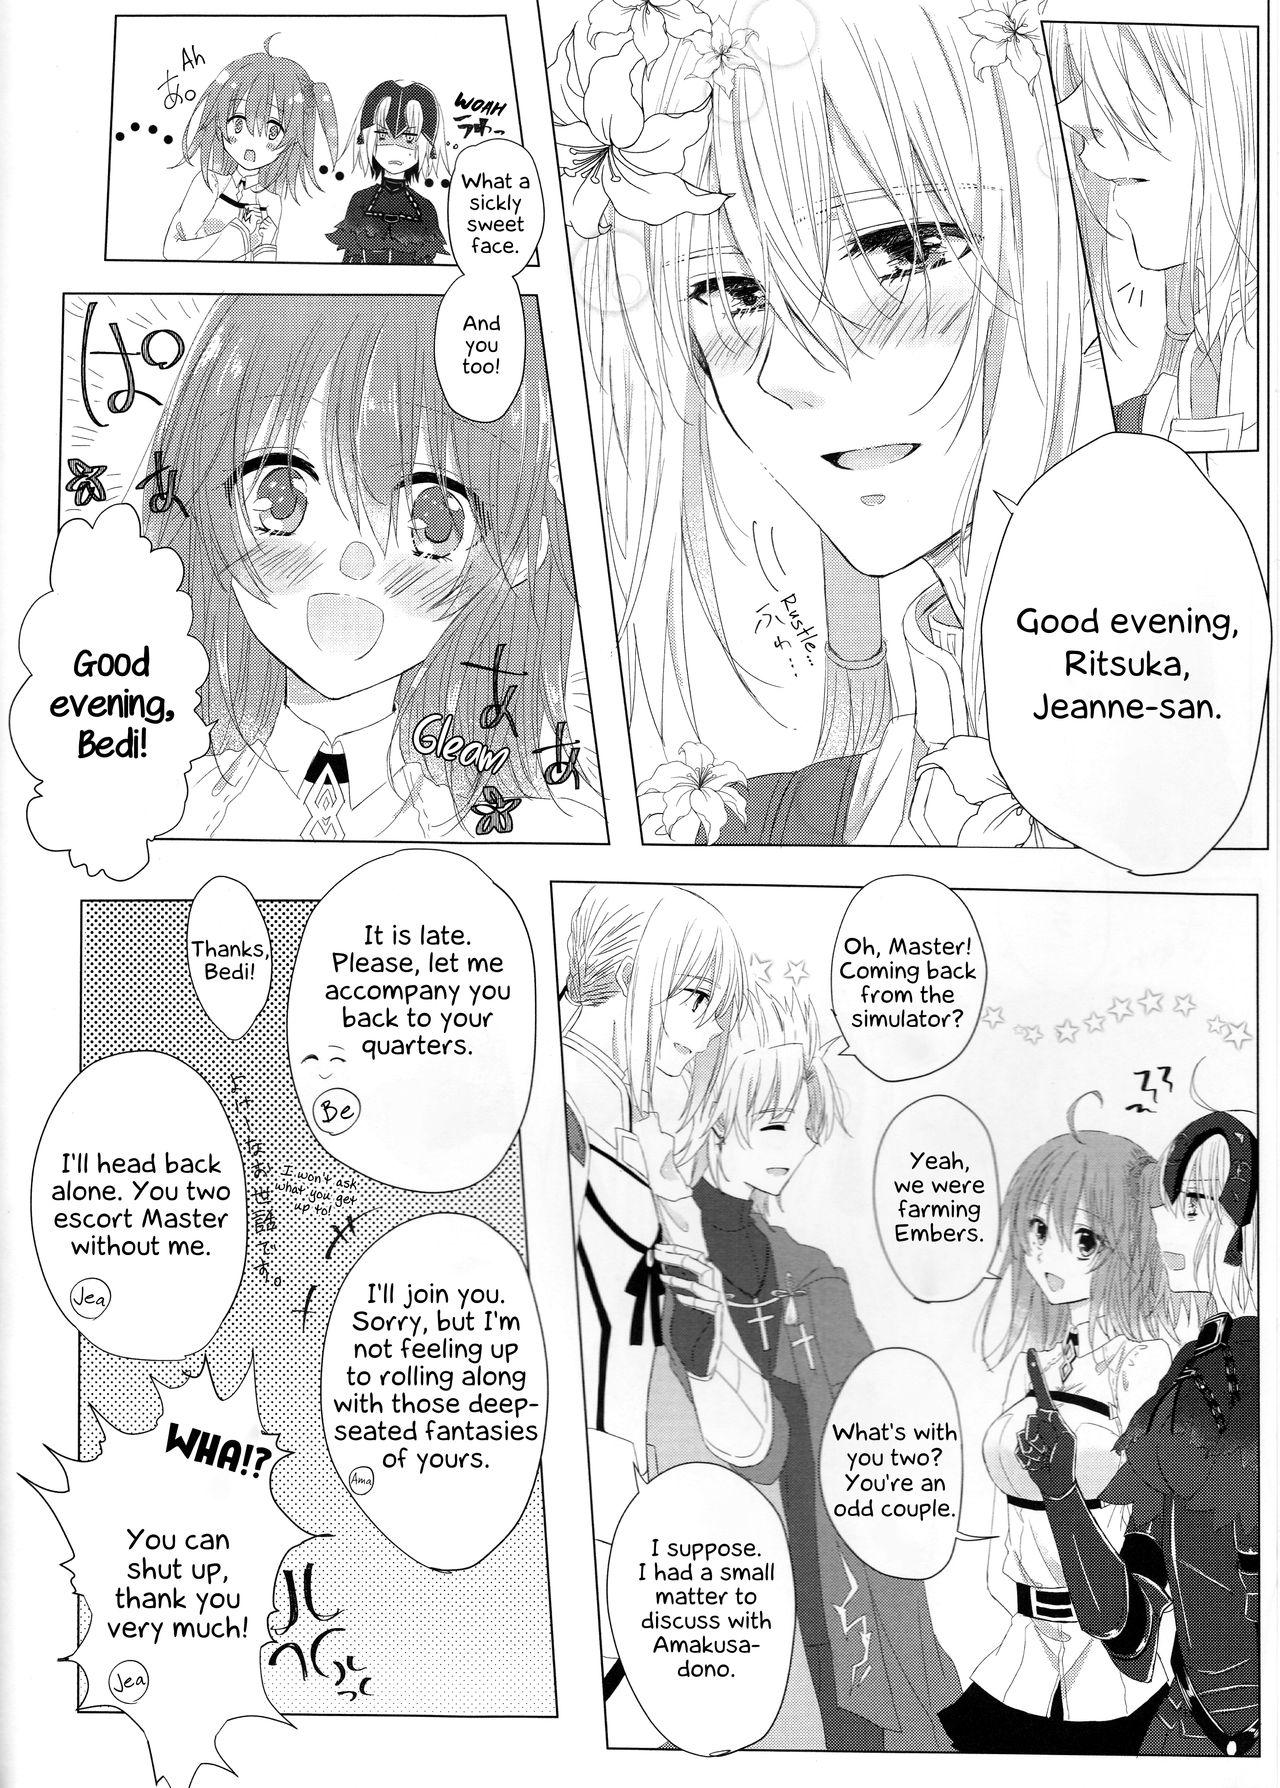 Passivo Anata no Koto ga Daisuki nanode! - Fate grand order Pussysex - Page 3